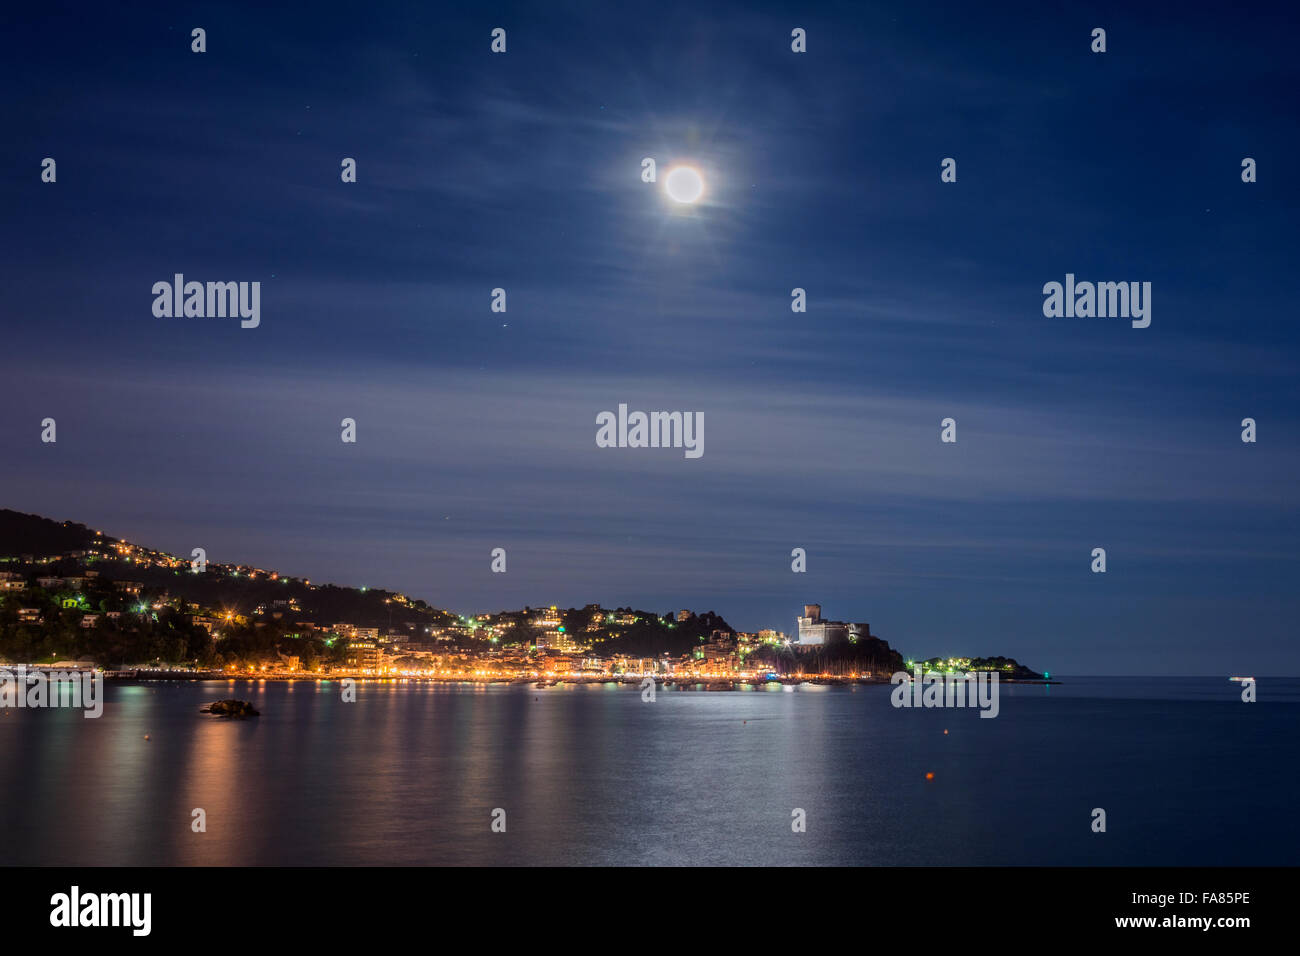 La nuit vue d'exposition, de port et de la vieille ville de Lerici, Italie. Banque D'Images